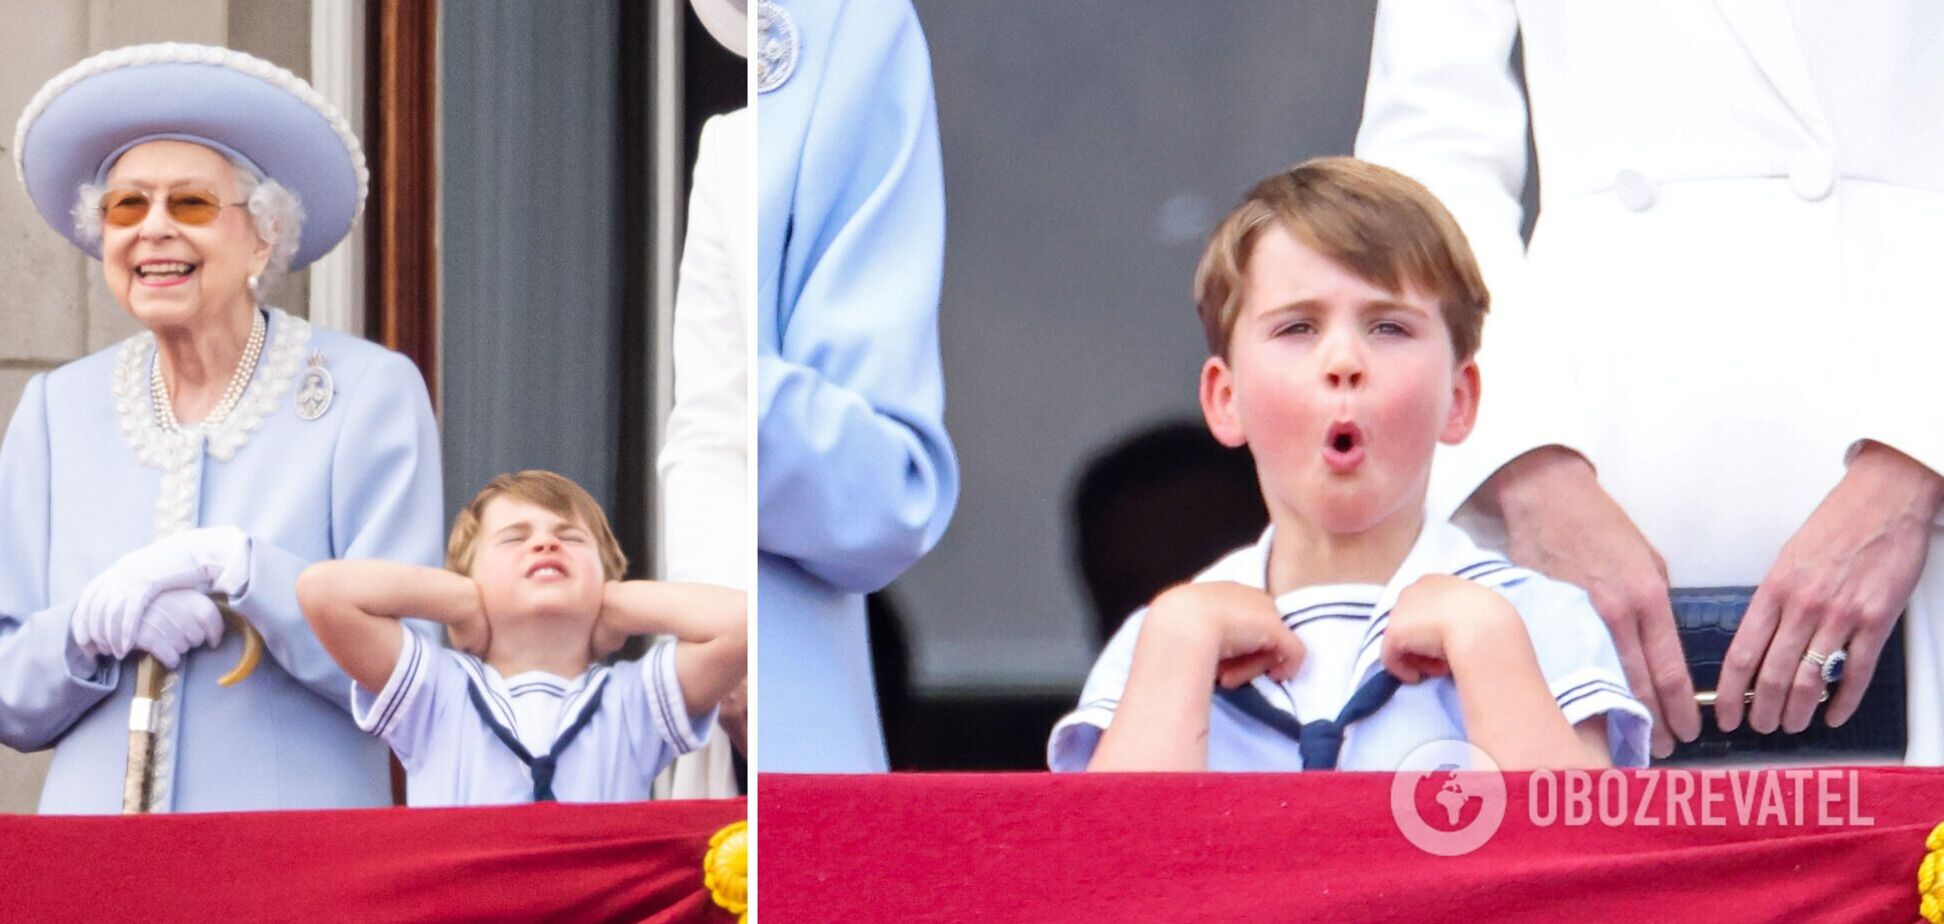 Четырехлетний принц Луи стал звездой парада в честь Елизаветы II. Фото, которые поднимут настроение